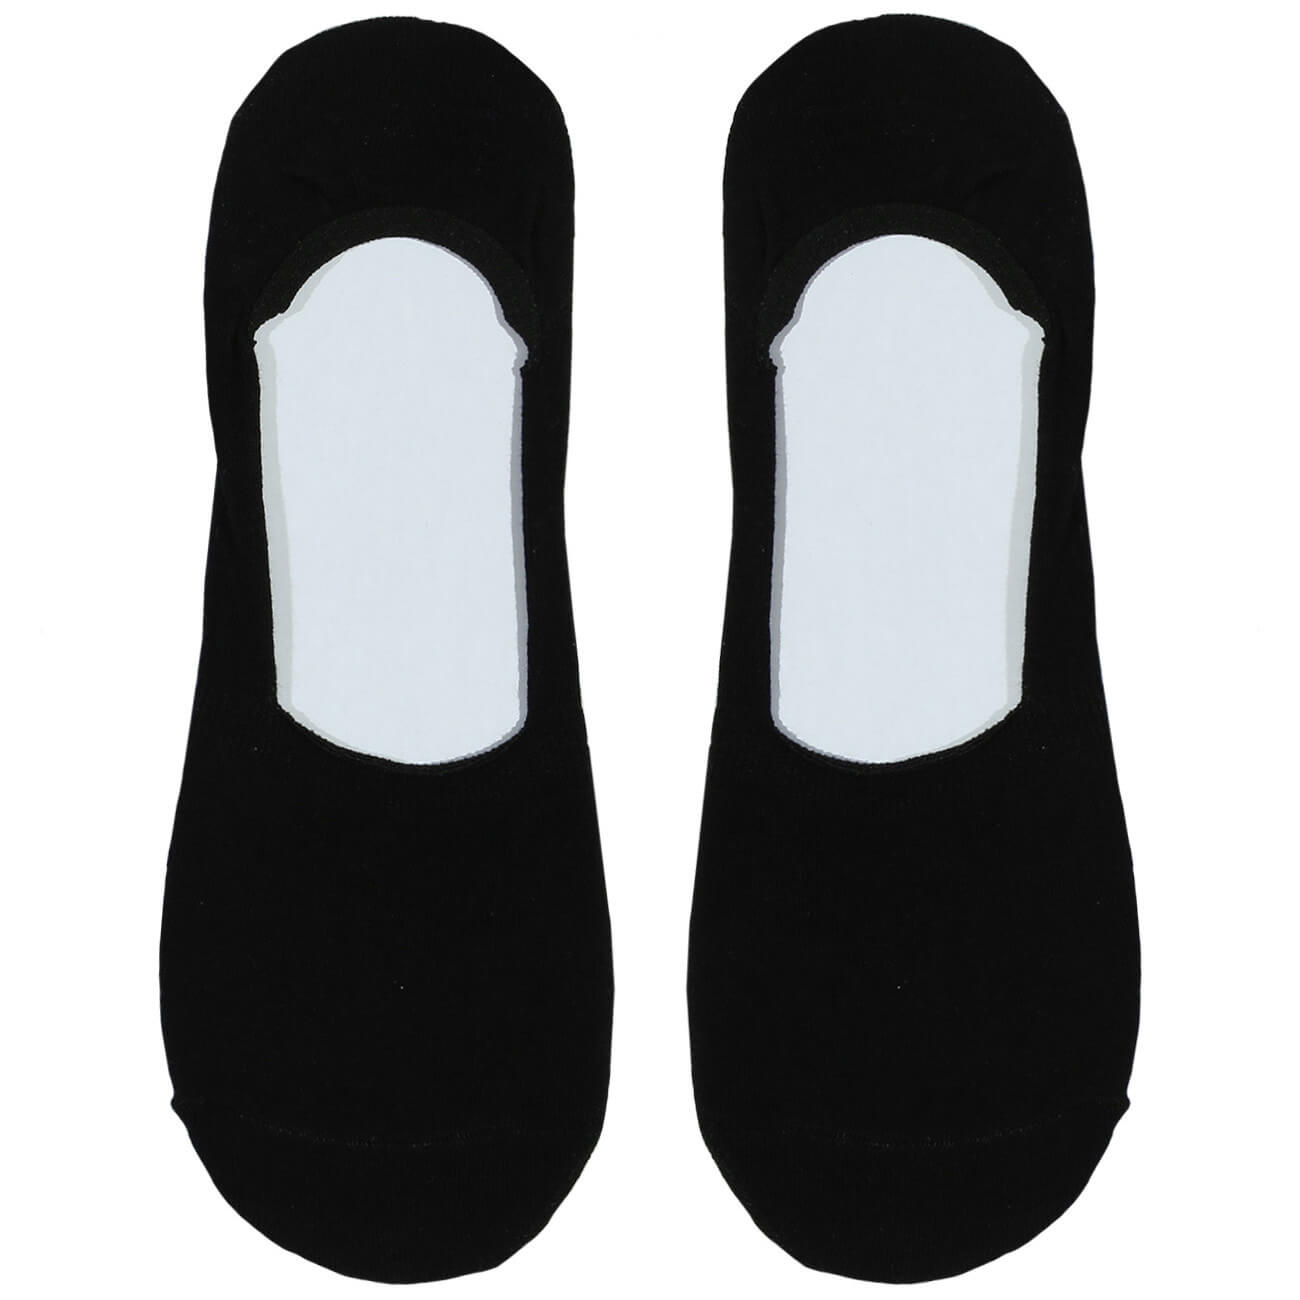 Носки-следки мужские, р. 39-42, хлопок/полиэстер, черные, Basic носки для мужчин diwari classic 007 черные р 29 5с 08 сп